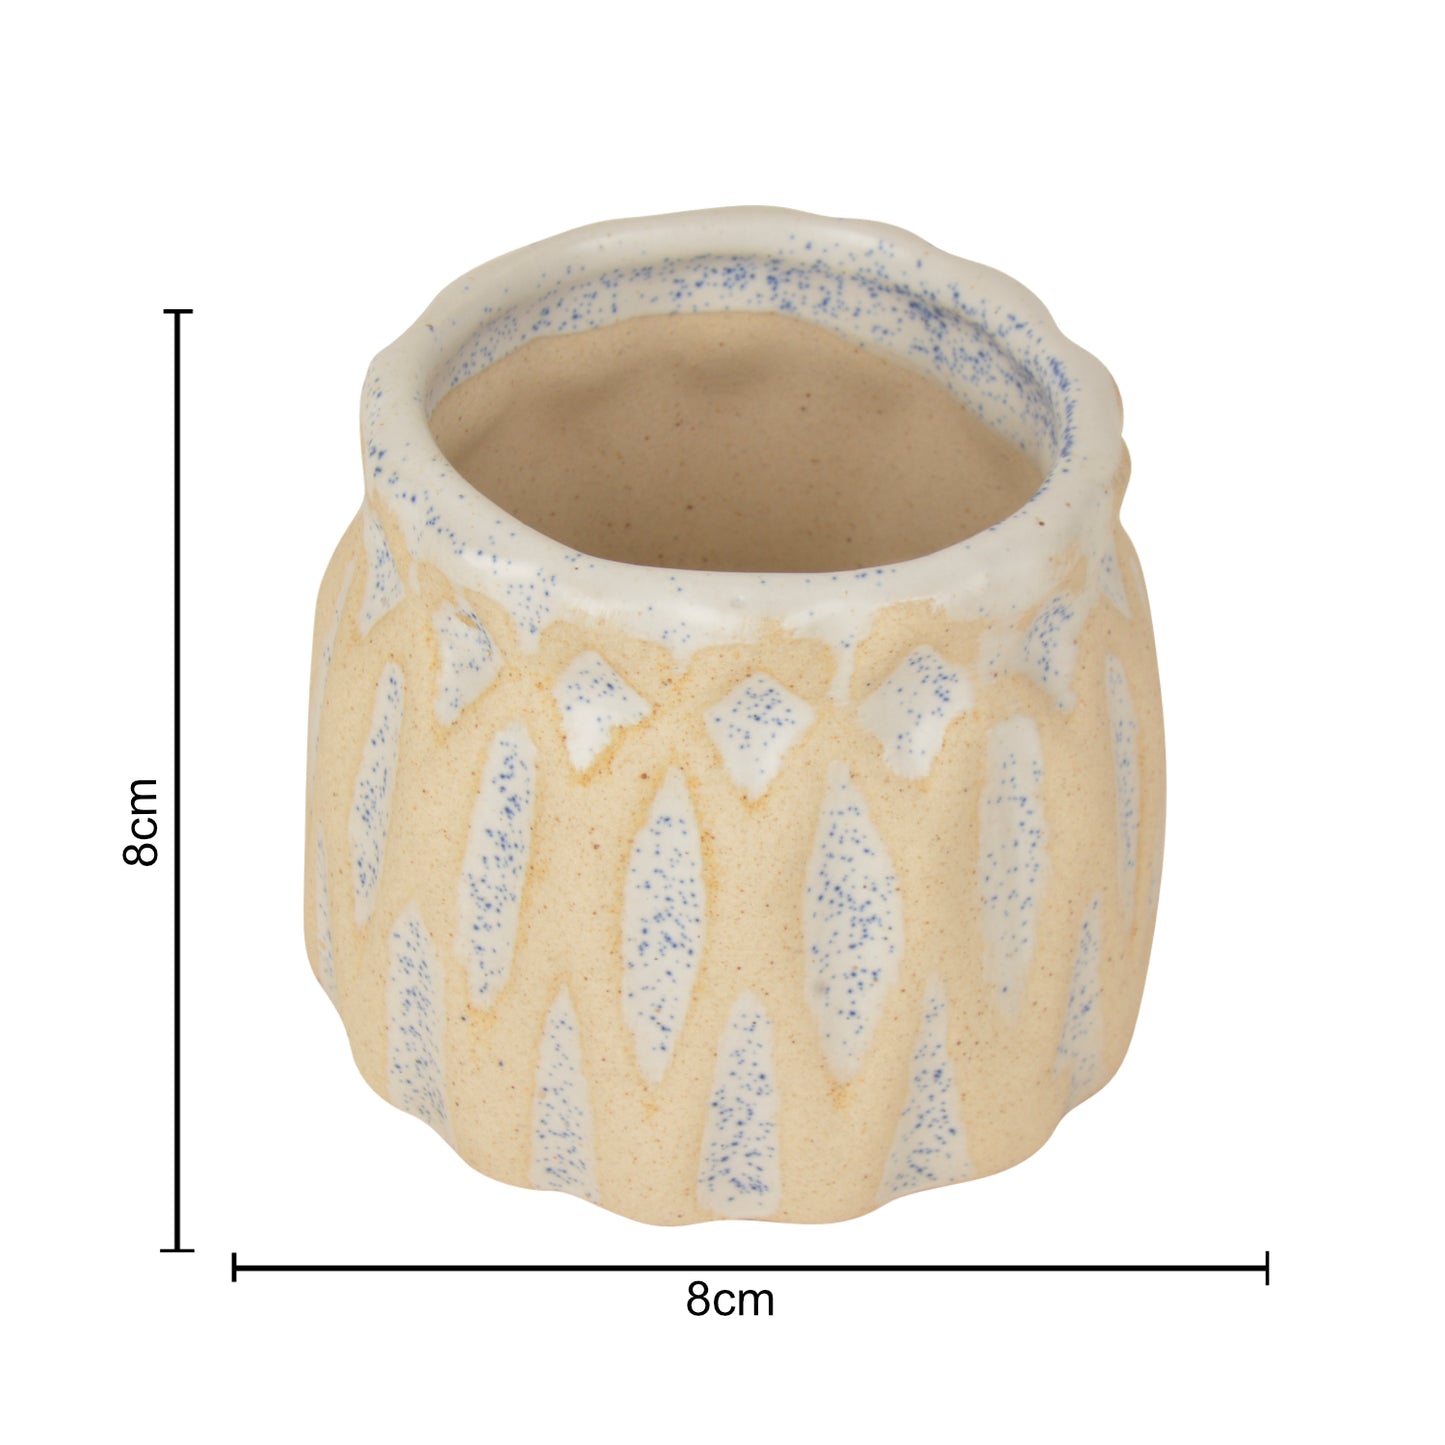 Handpainted Dual Tone Ceramic Planter Pot (Beige and Blue, Diameter - 8 cm, Height - 8 cm)